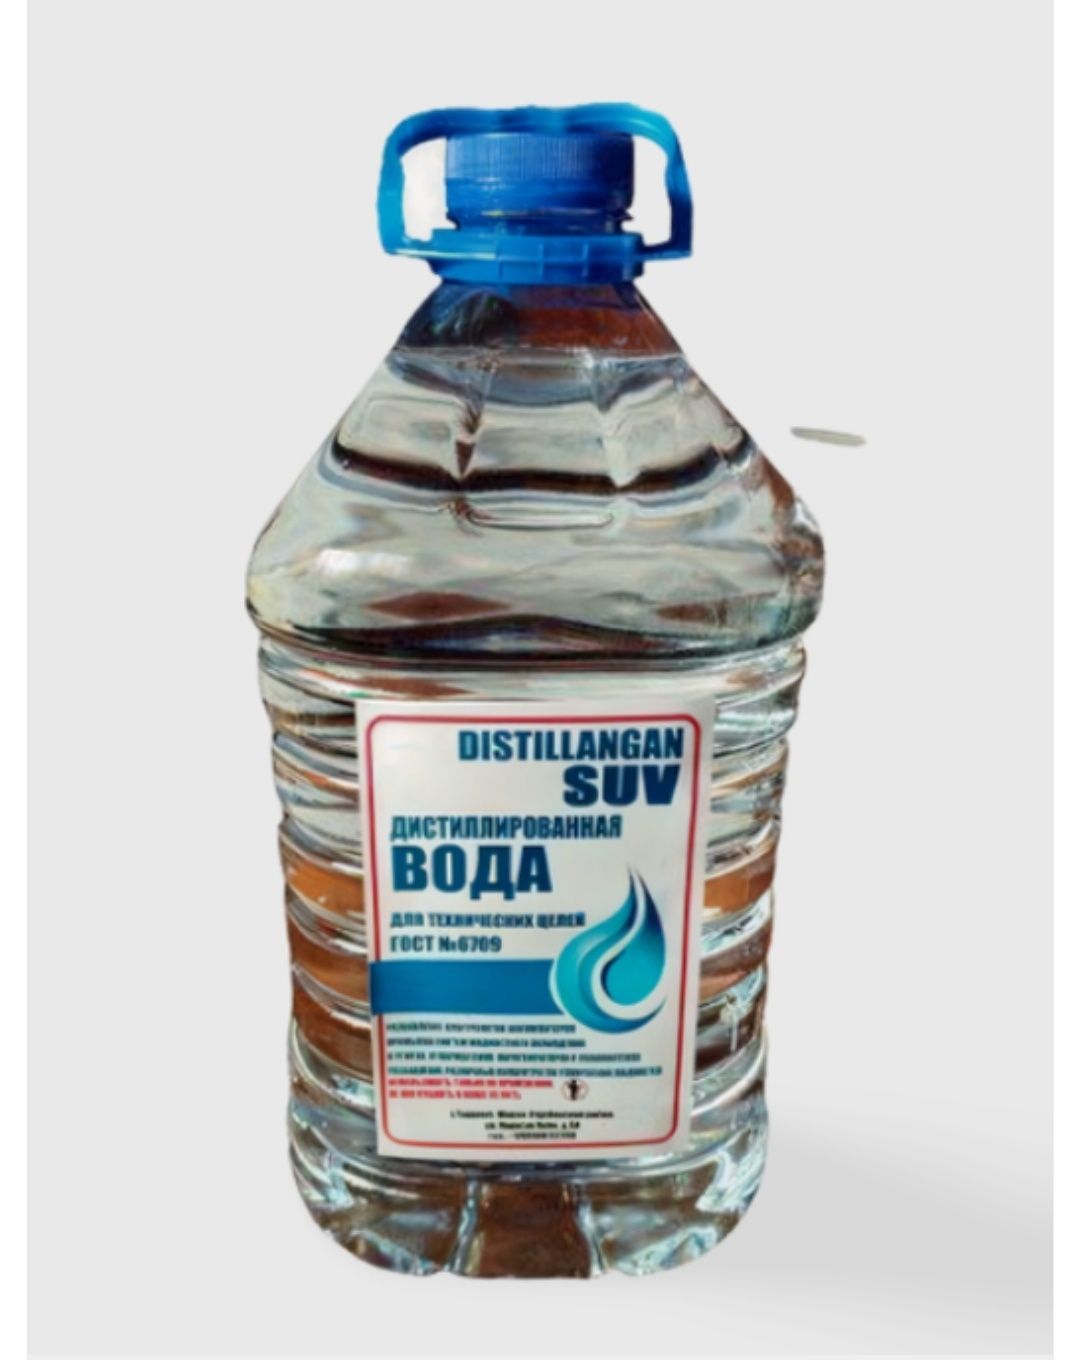 Distillangan suv дистиллированная вода Доставка по Узбекистану бесплат